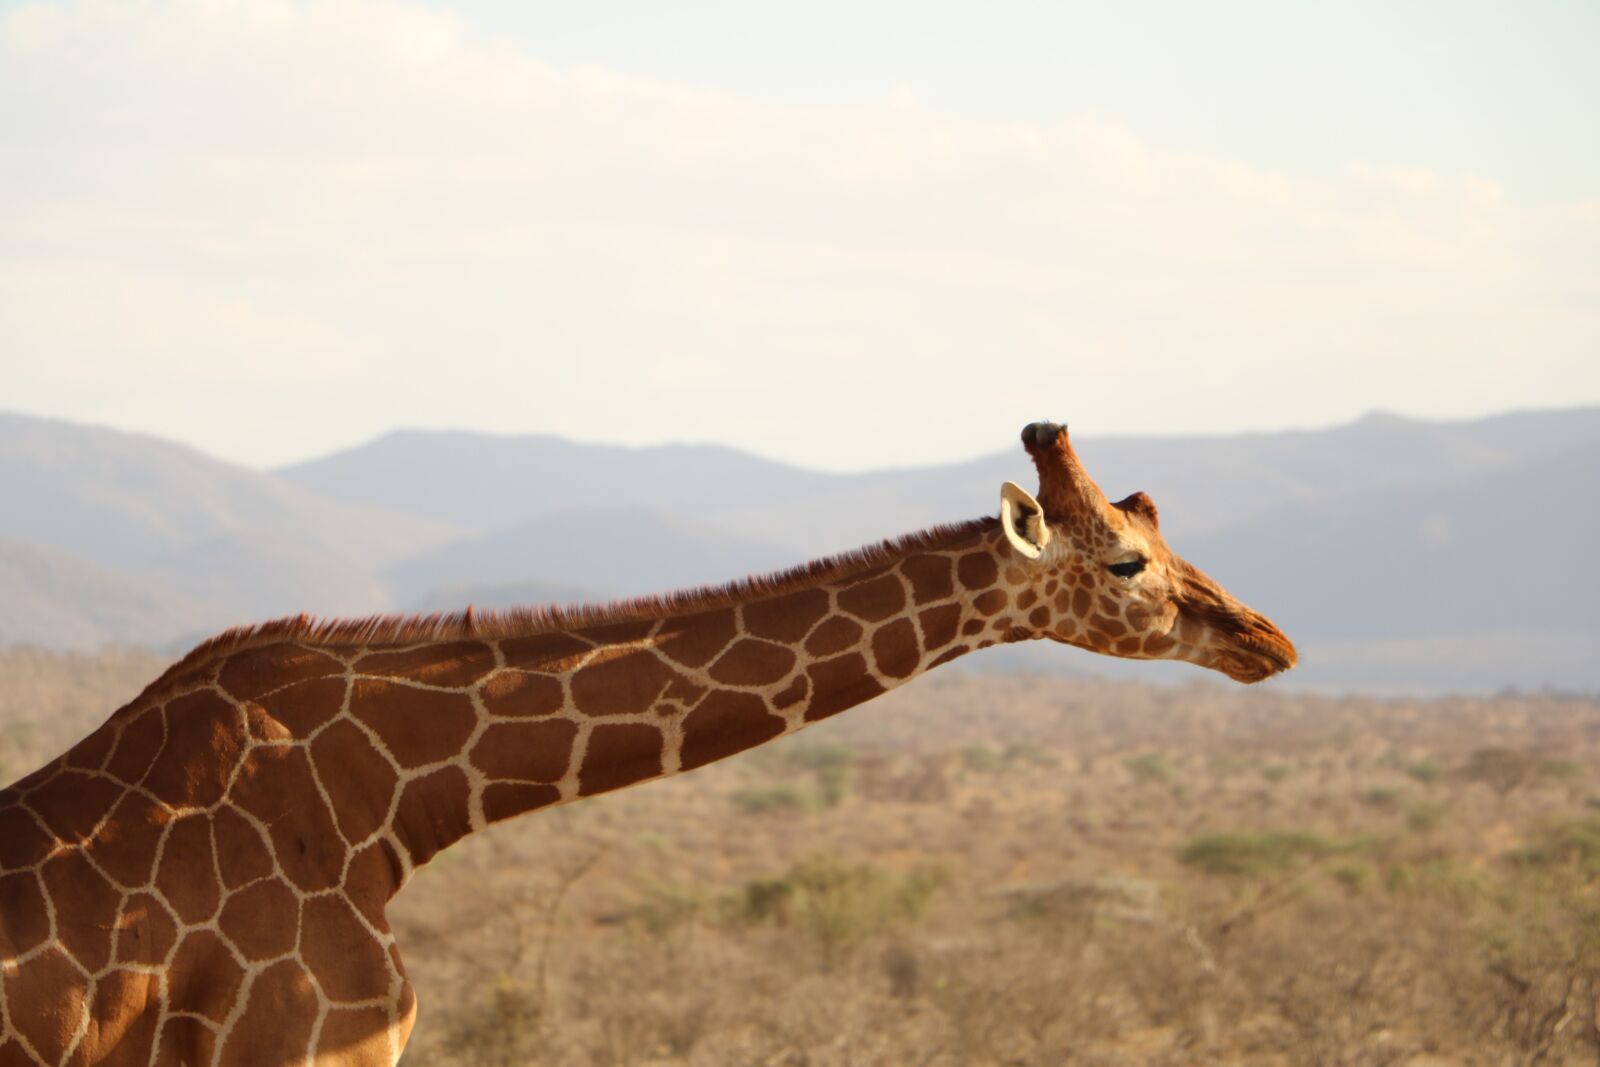 Canon EOS 760D (EOS Rebel T6s / EOS 8000D) sample photo. Giraffe, safari, animal photography